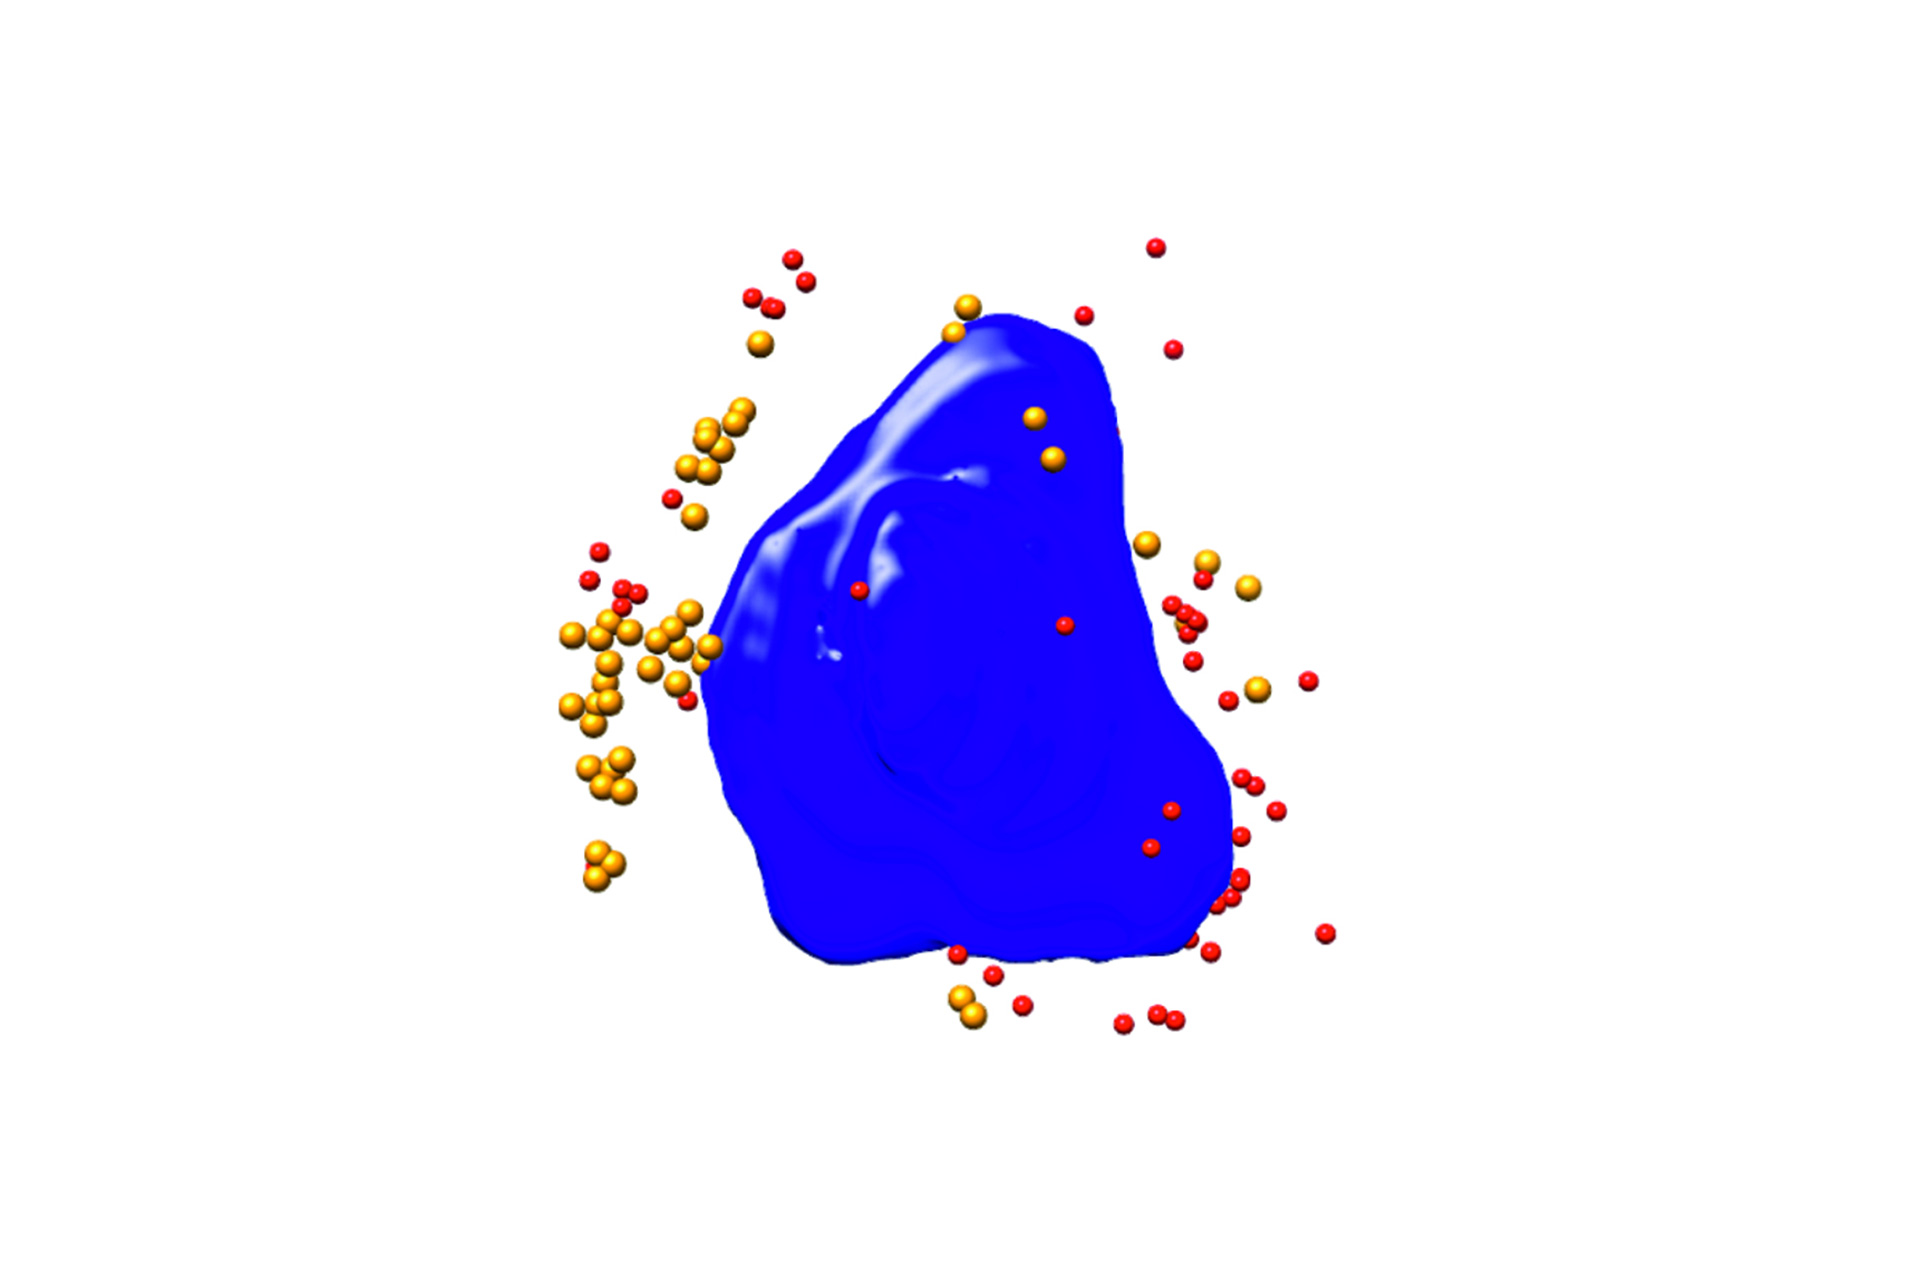 感染病毒的Ptk2细胞的分割三维渲染。蓝色：细胞核，红色/橙色：病毒颗粒；细胞宽度约10 µm；Xradia 825 Synchrotron。图像提供者：西班牙马德里国家生物技术中心和ALBA同步辐射光源的F.J. Chichon。 